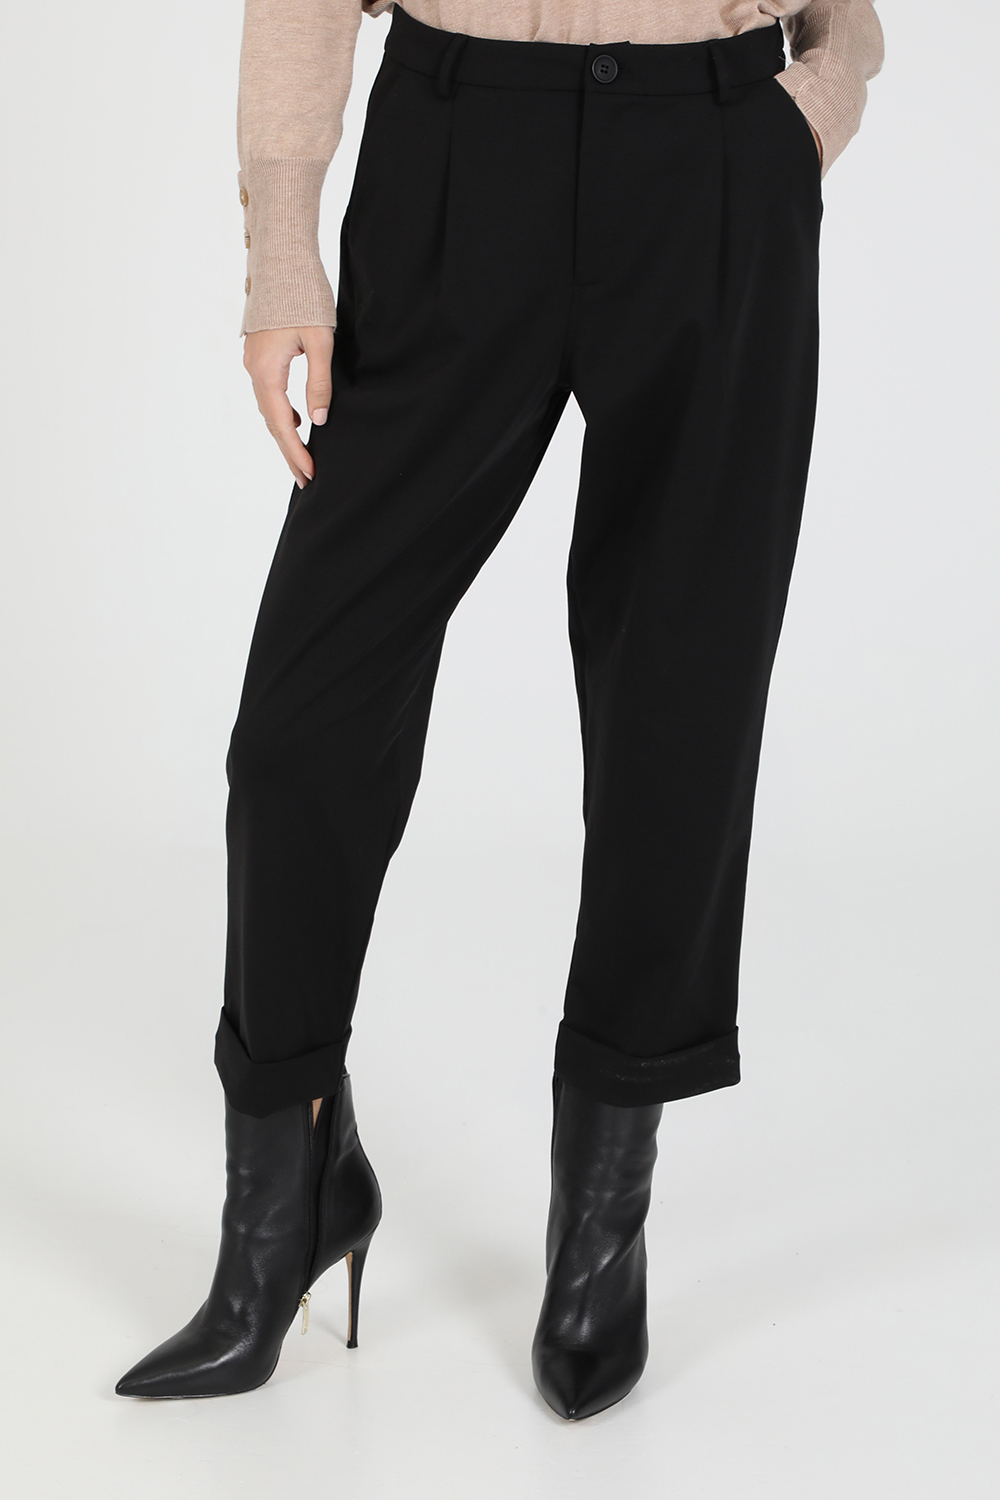 Γυναικεία/Ρούχα/Παντελόνια/Cropped LA DOLLS - Γυναικείο cropped παντελόνι LA DOLLS ENERGY μαύρο